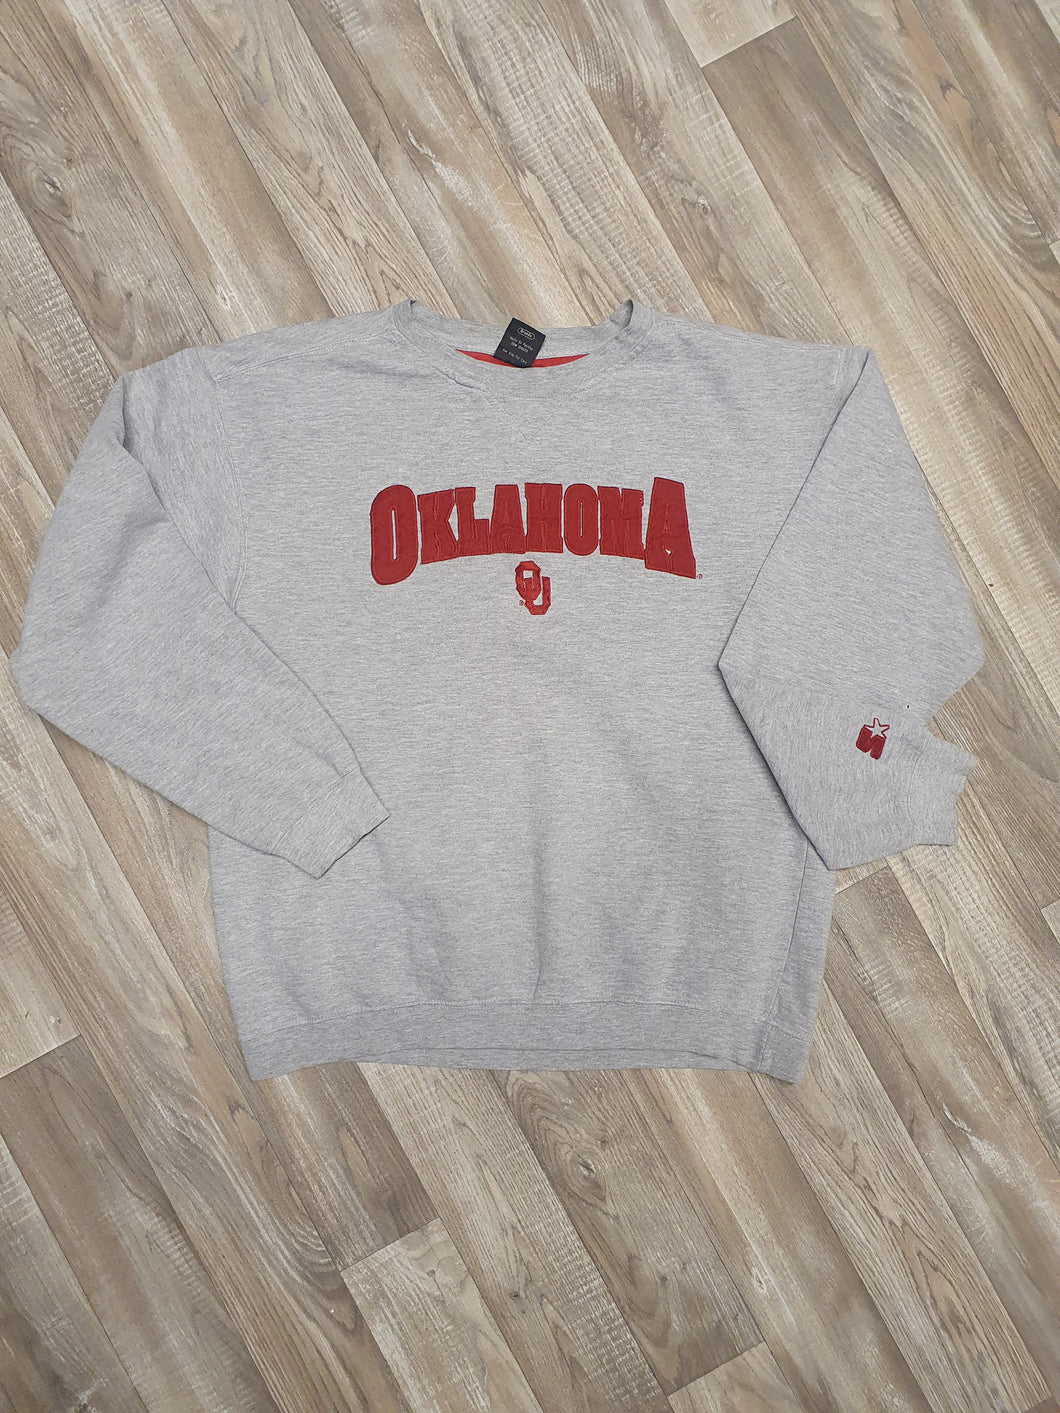 Oklahoma University Sweater Size Large